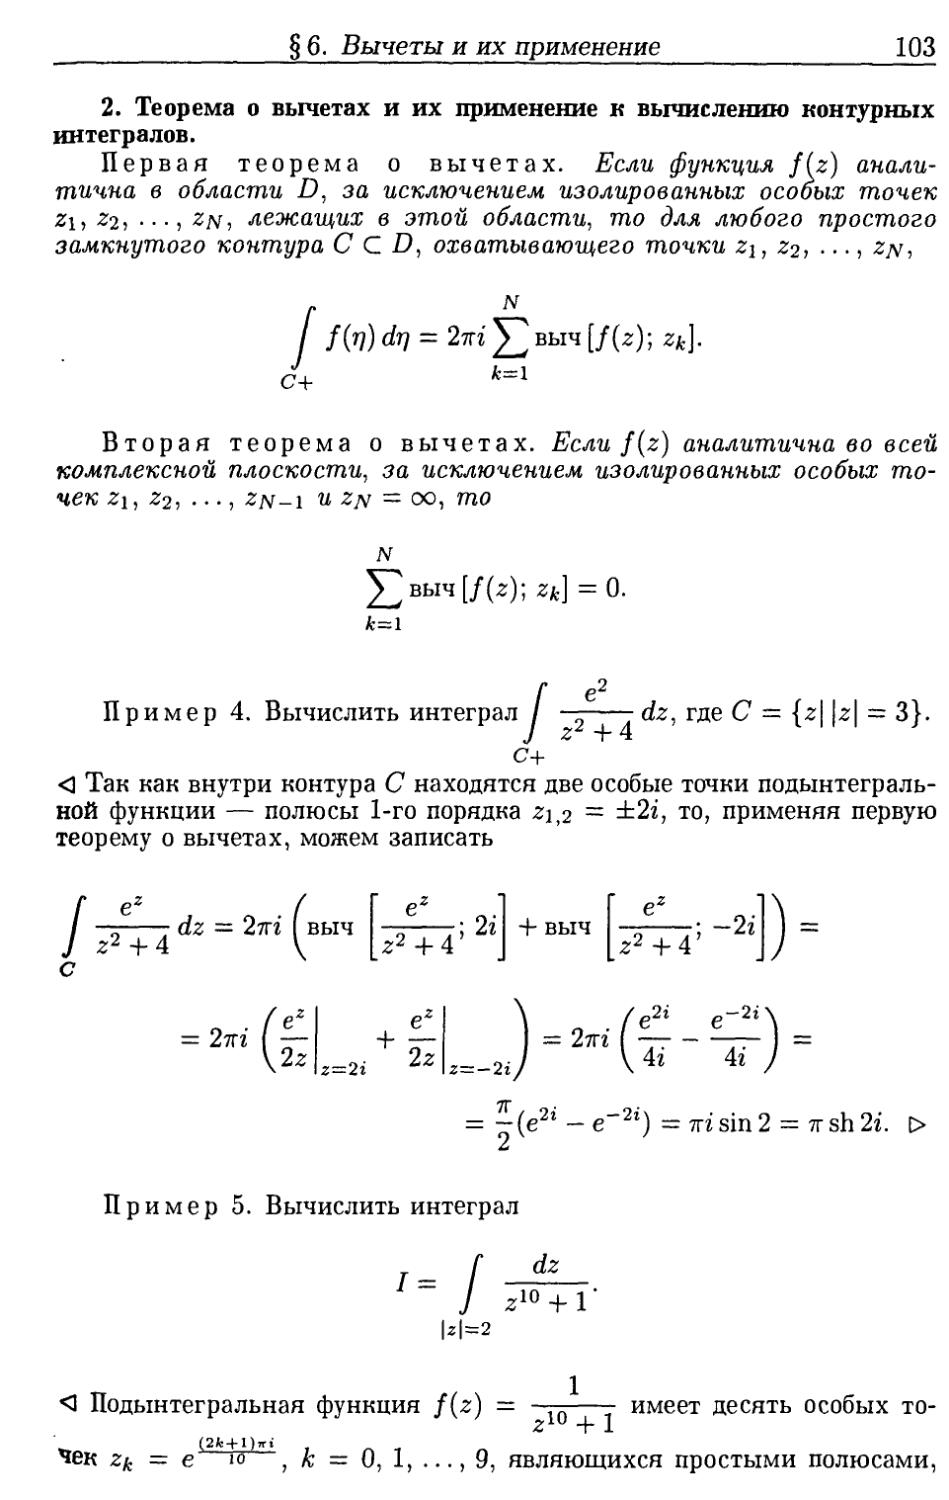 2. Теоремы о вычетах и их применение к вычислению контурных интегралов